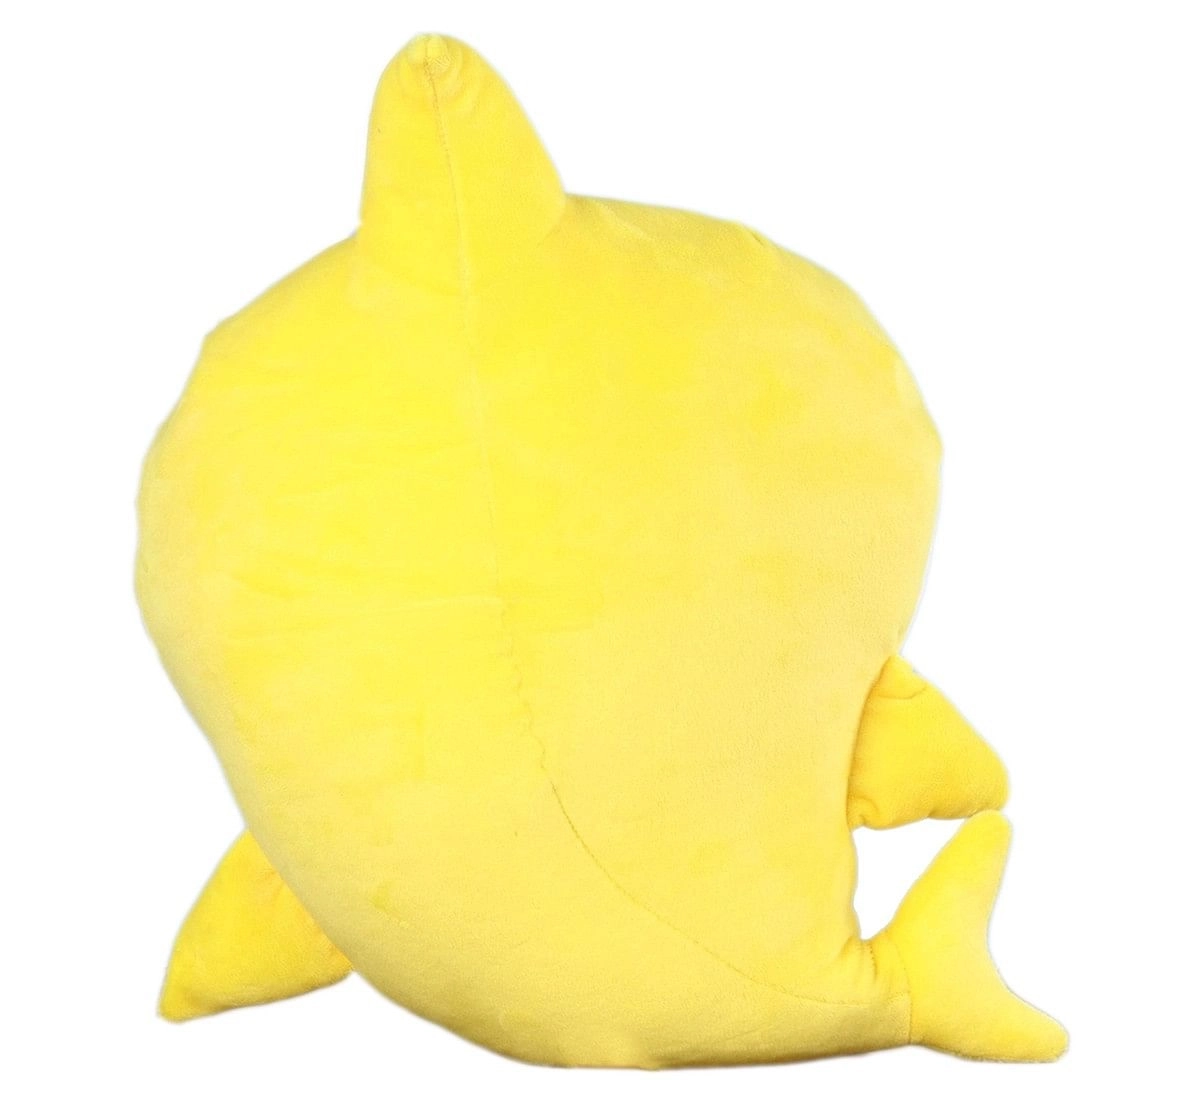 Baby Shark Baby Shark Plush 30 Cm, 0M+ (Yellow)